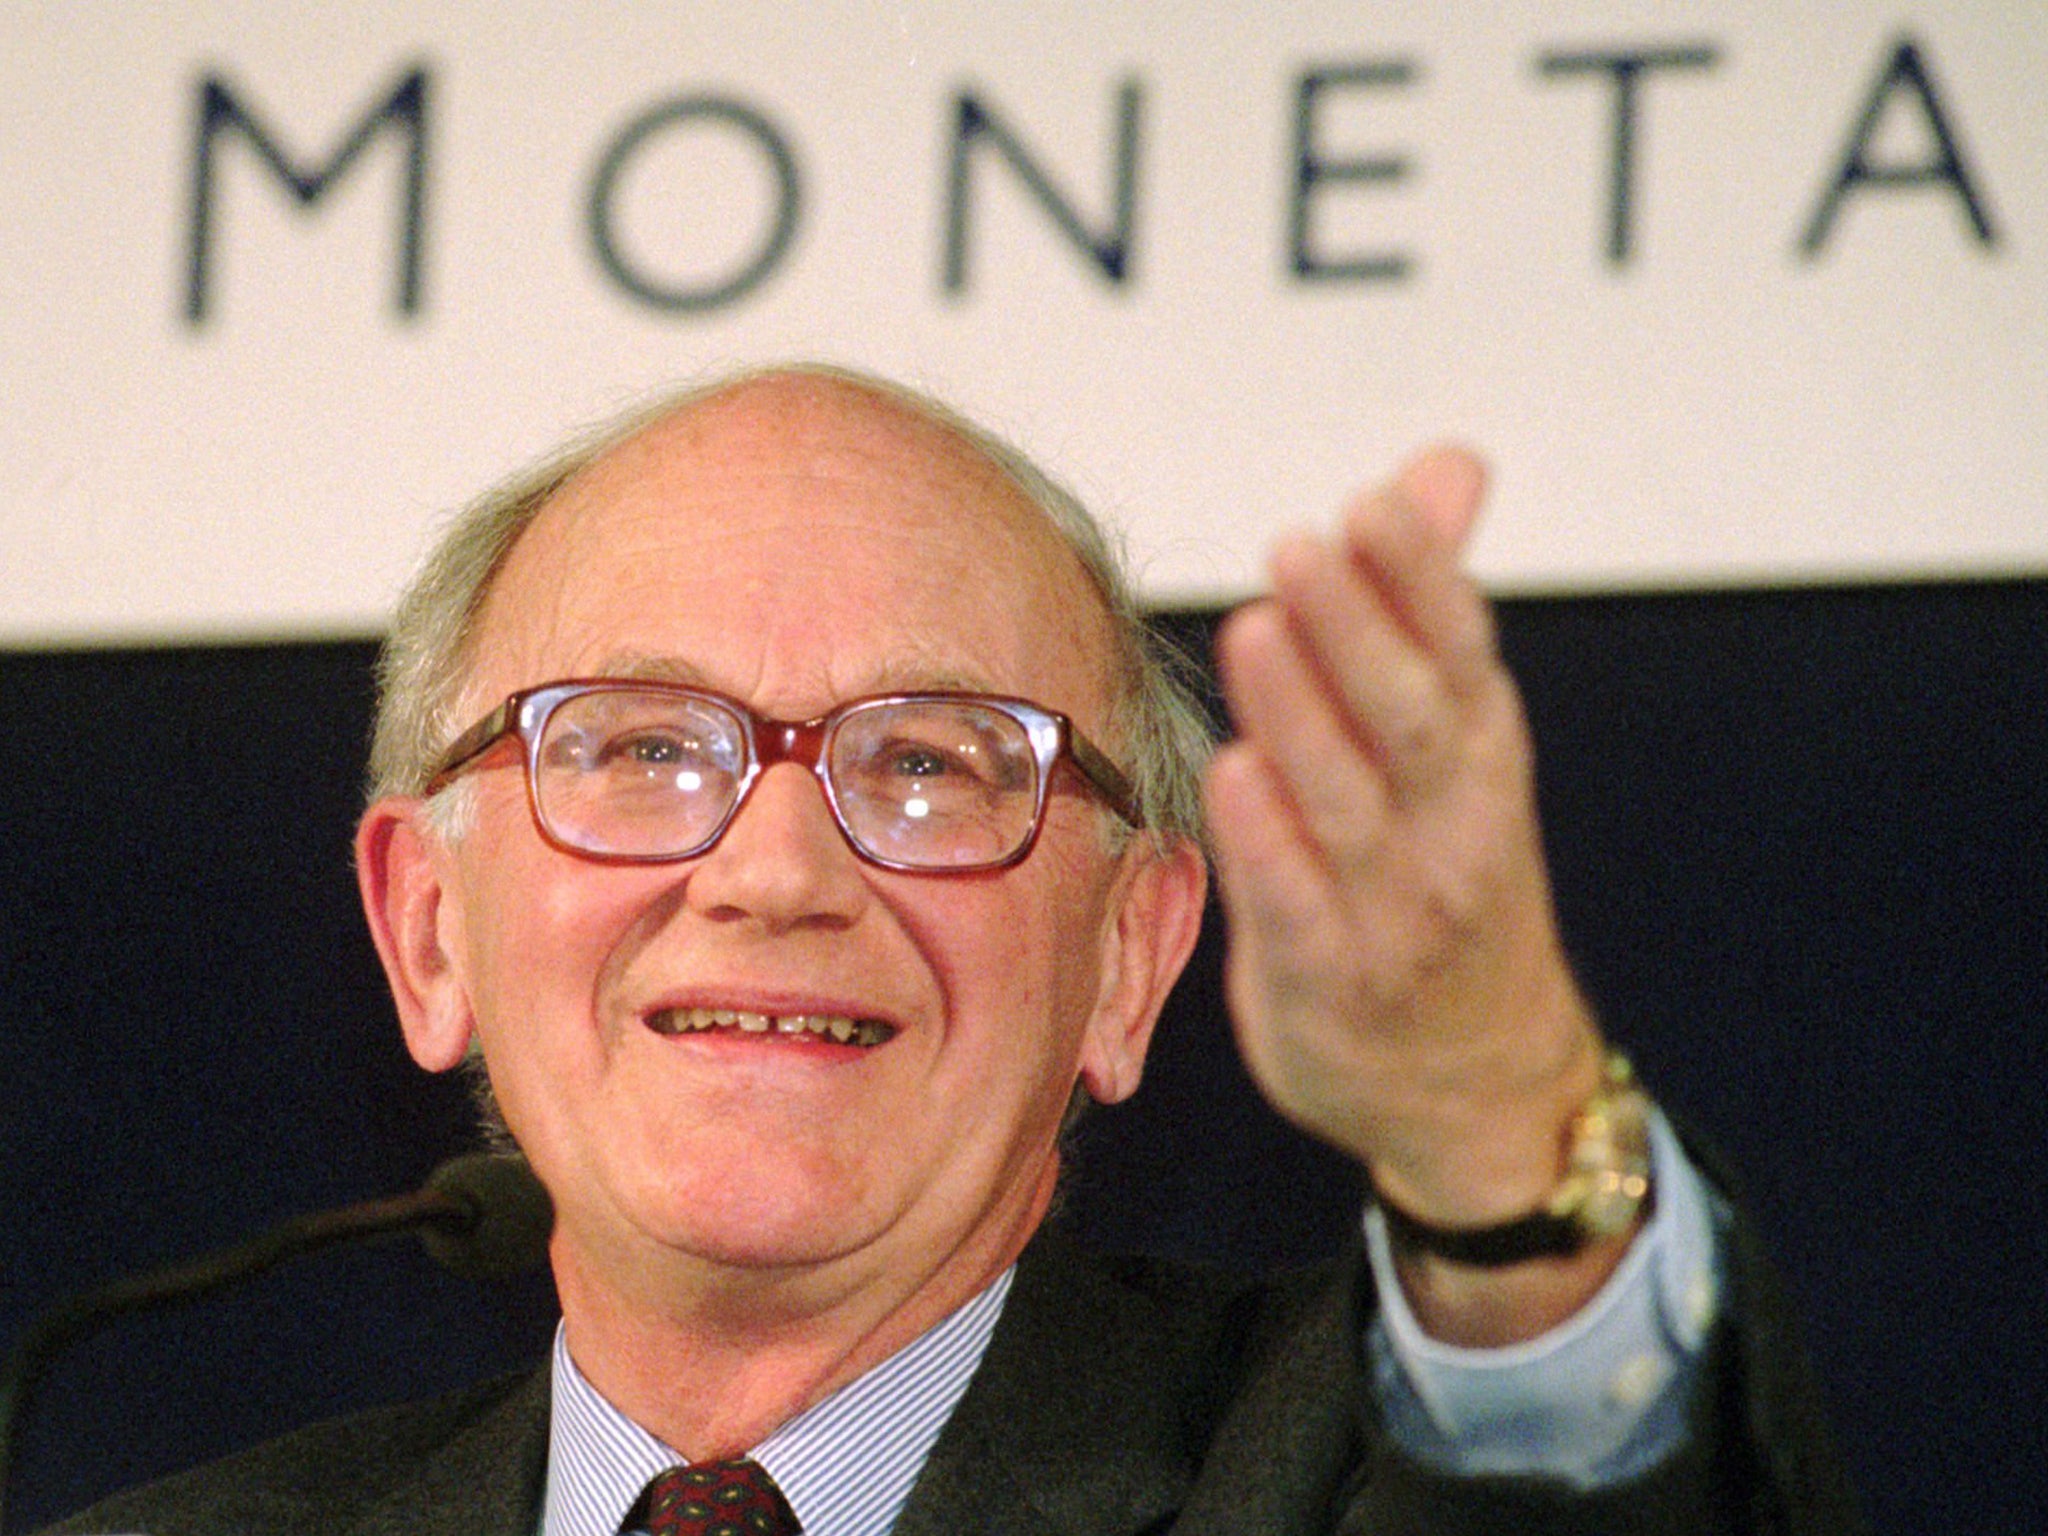 Lamfalussy in Frankfurt in 1997, when he was president of the European Monetary Institute 